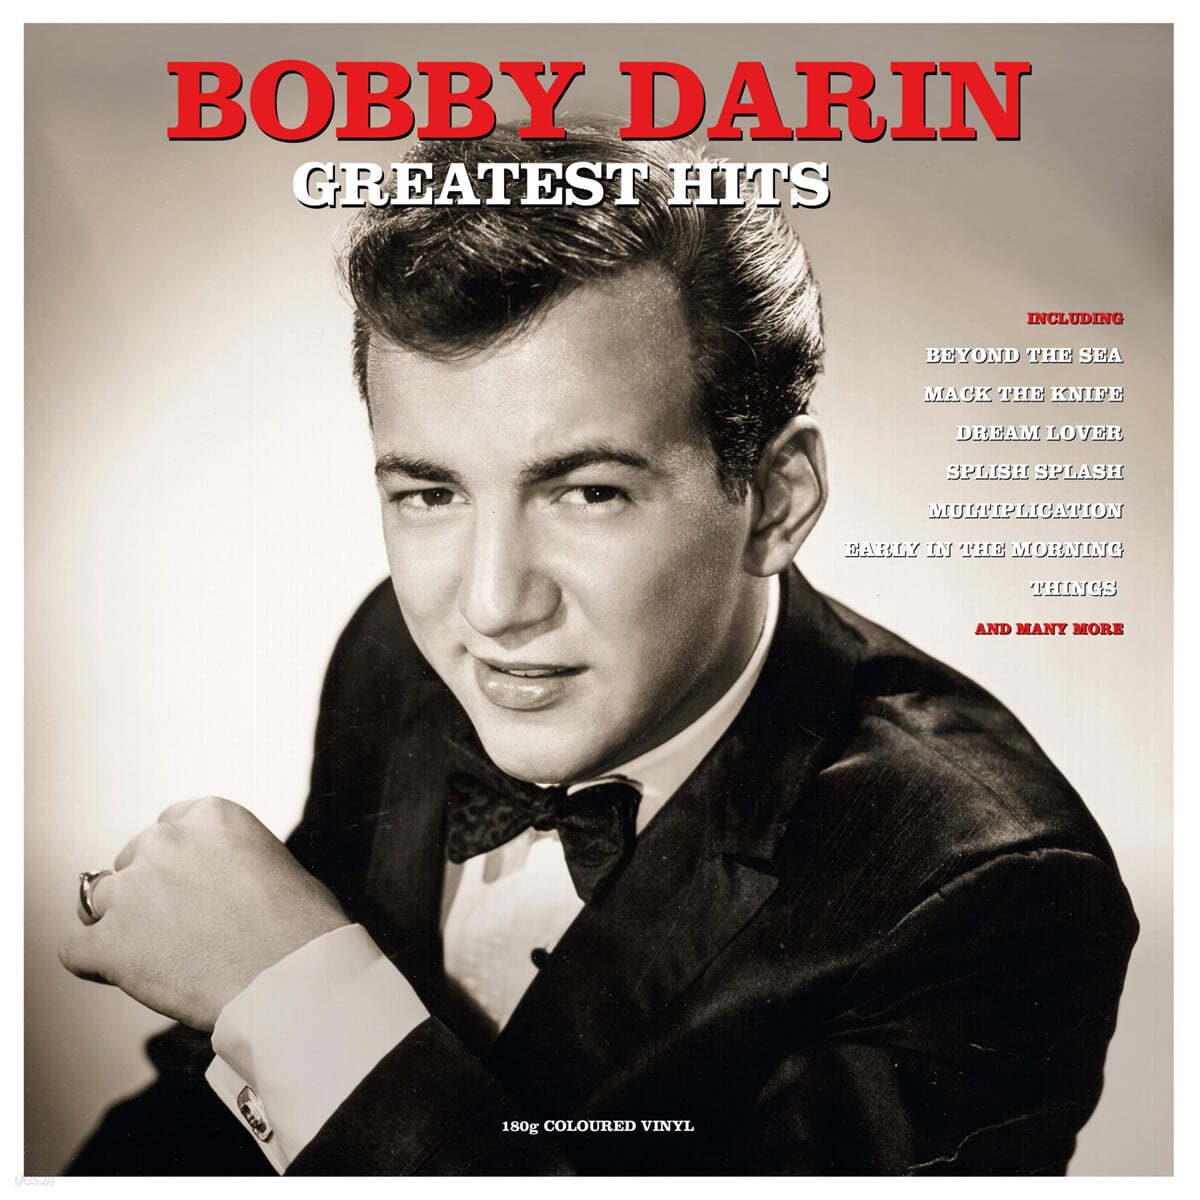 바비 대린 히트곡 모음집 (Bobby Darin Greatest Hits) [레드 컬러 LP]